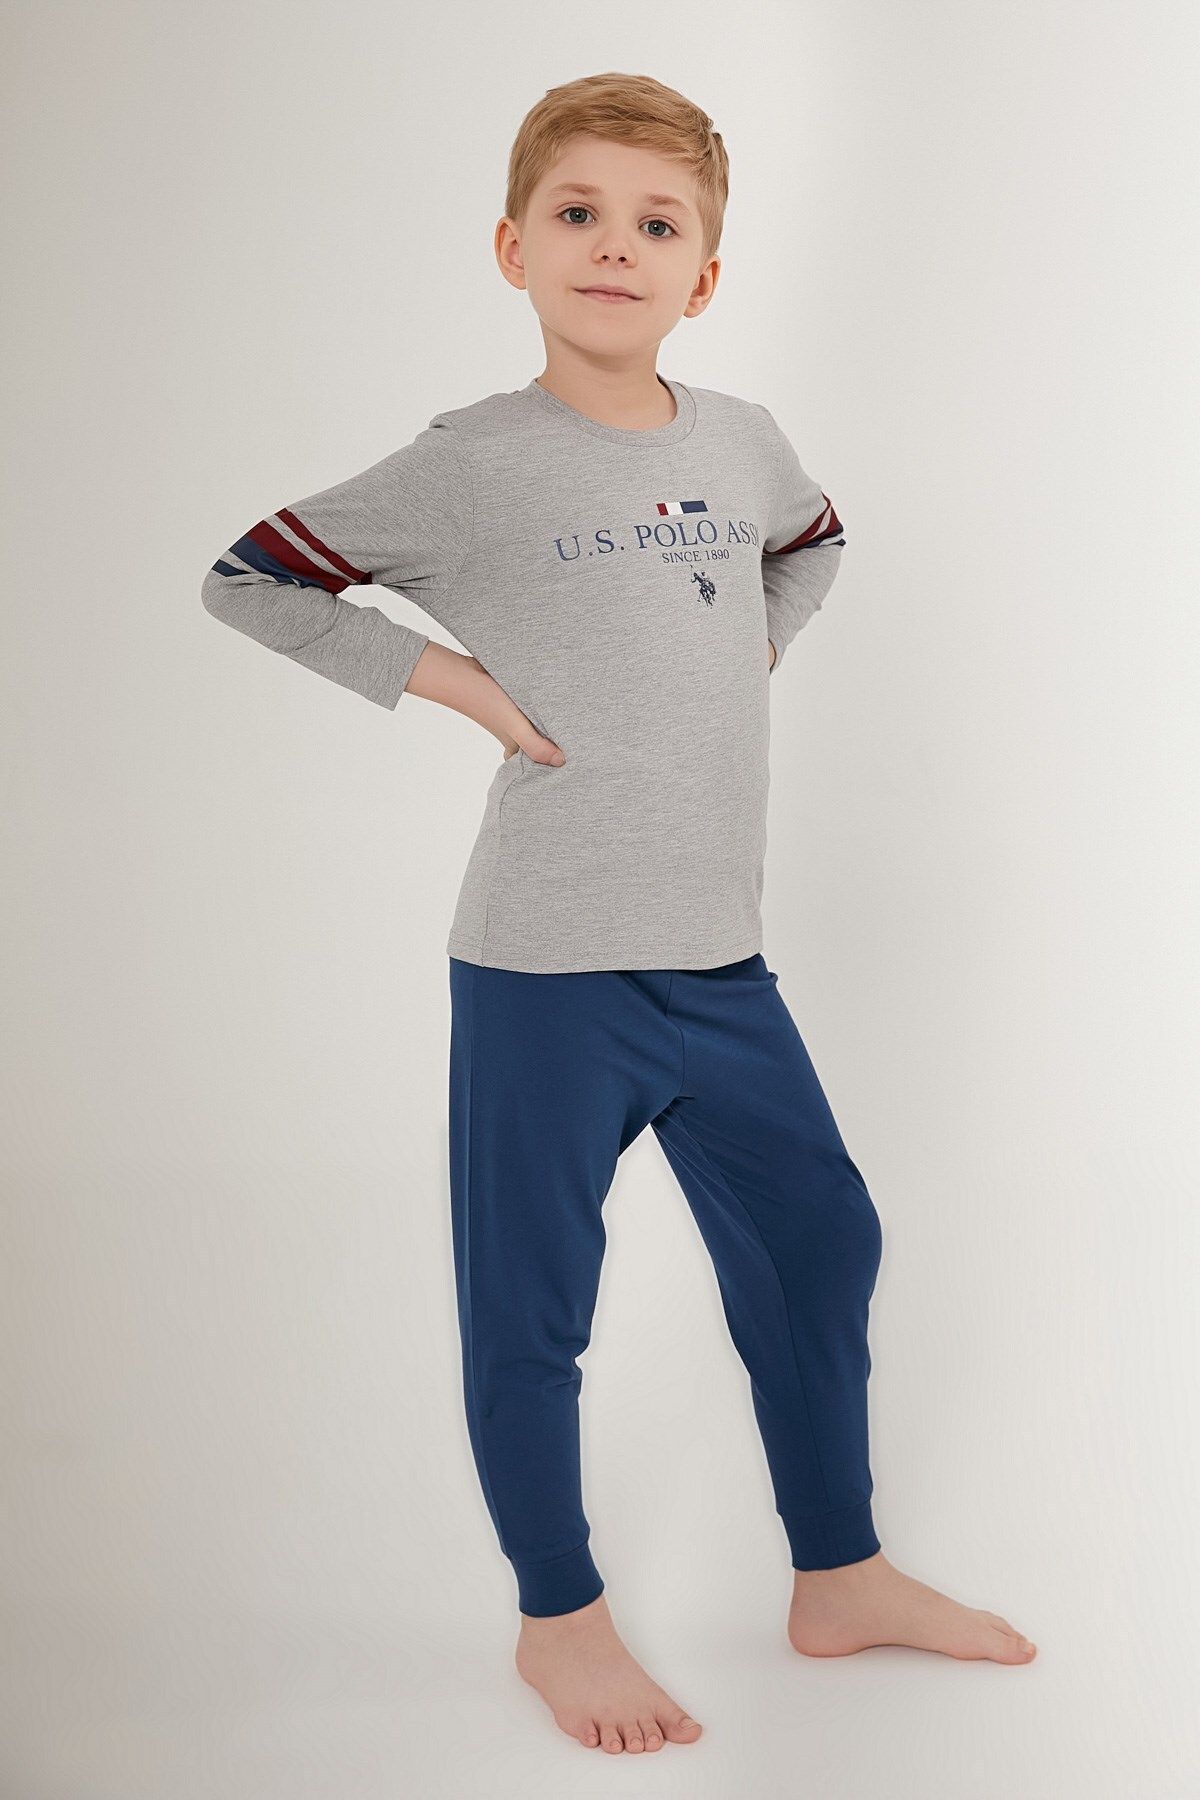 U.S. Polo Assn. U.S. Polo Assn. Erkek Çocuk Uzun Kollu Pijama Takımı